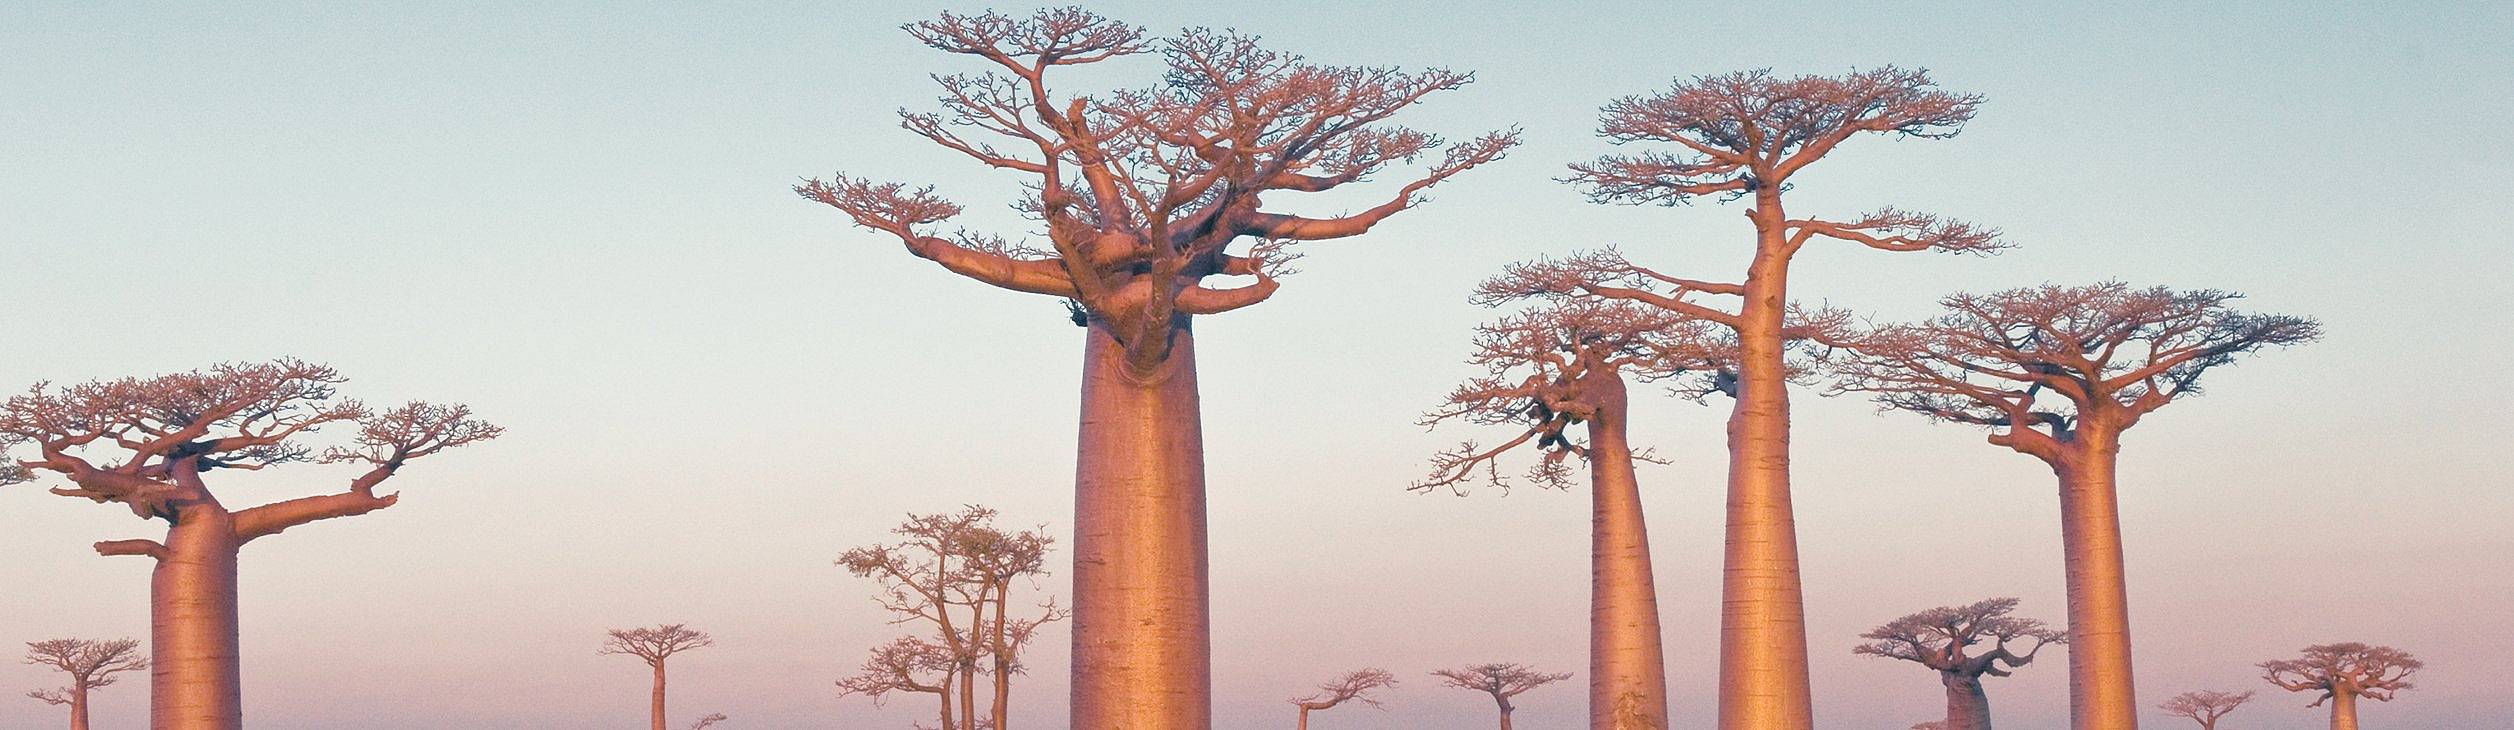 Grupo de árboles baobab, Madagascar